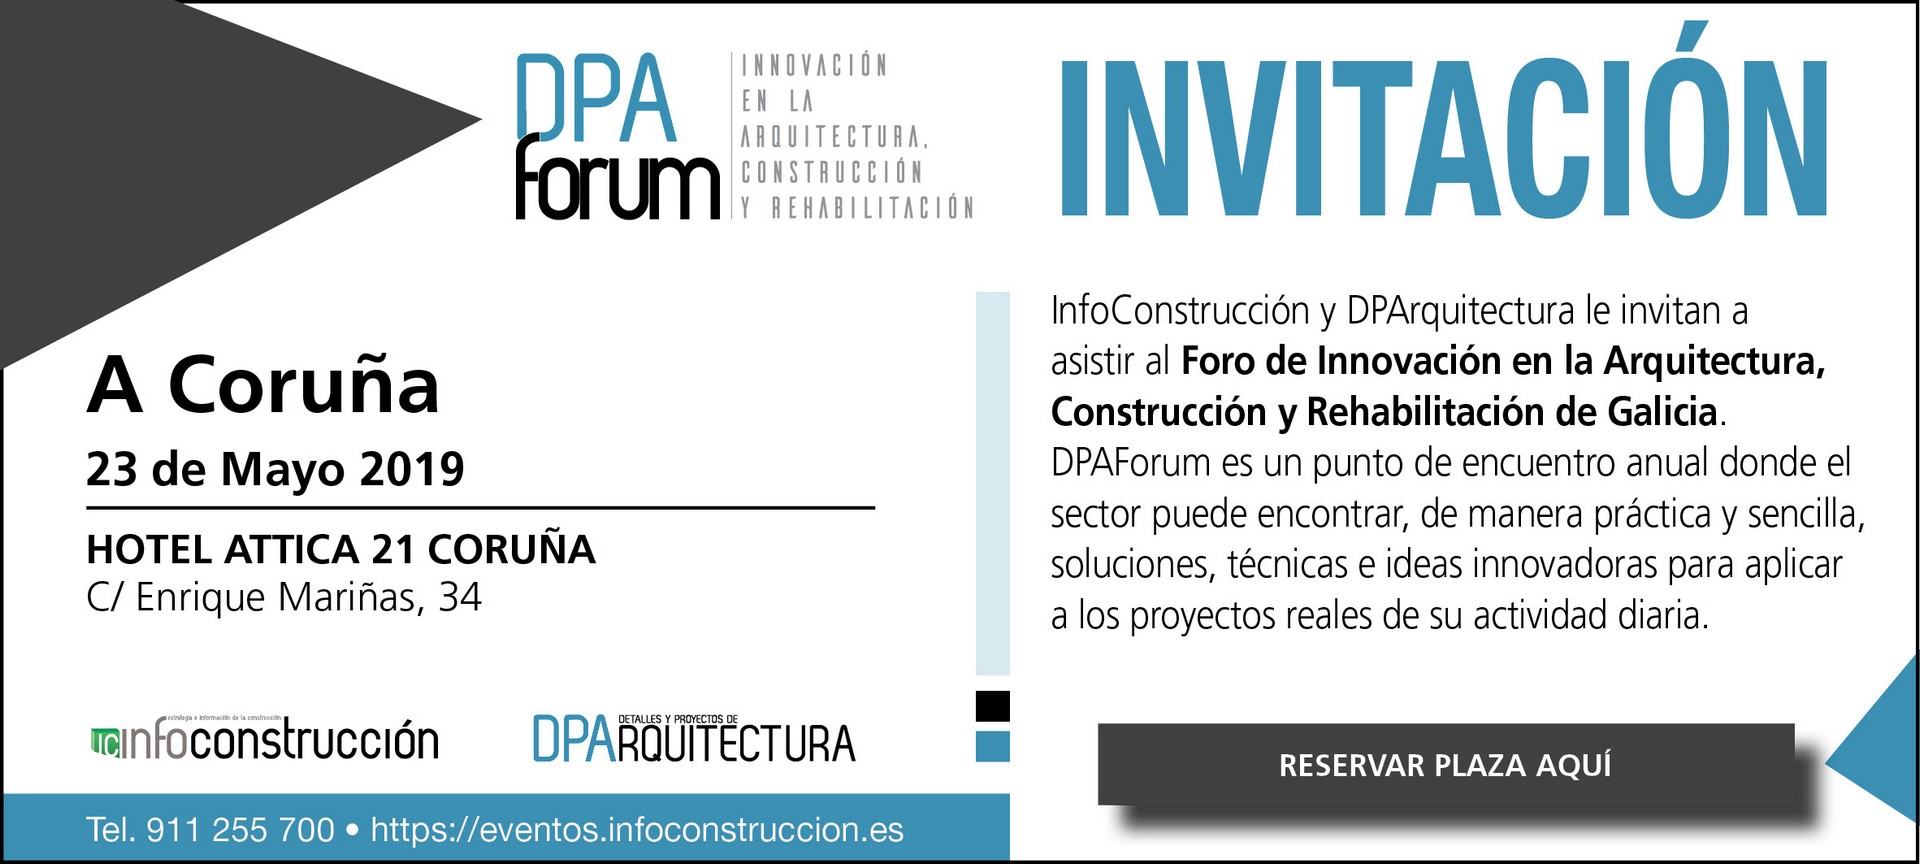 DPA Forum GALICIA 2019. Innovación en la Arquitectura, Construcción y Rehabilitación